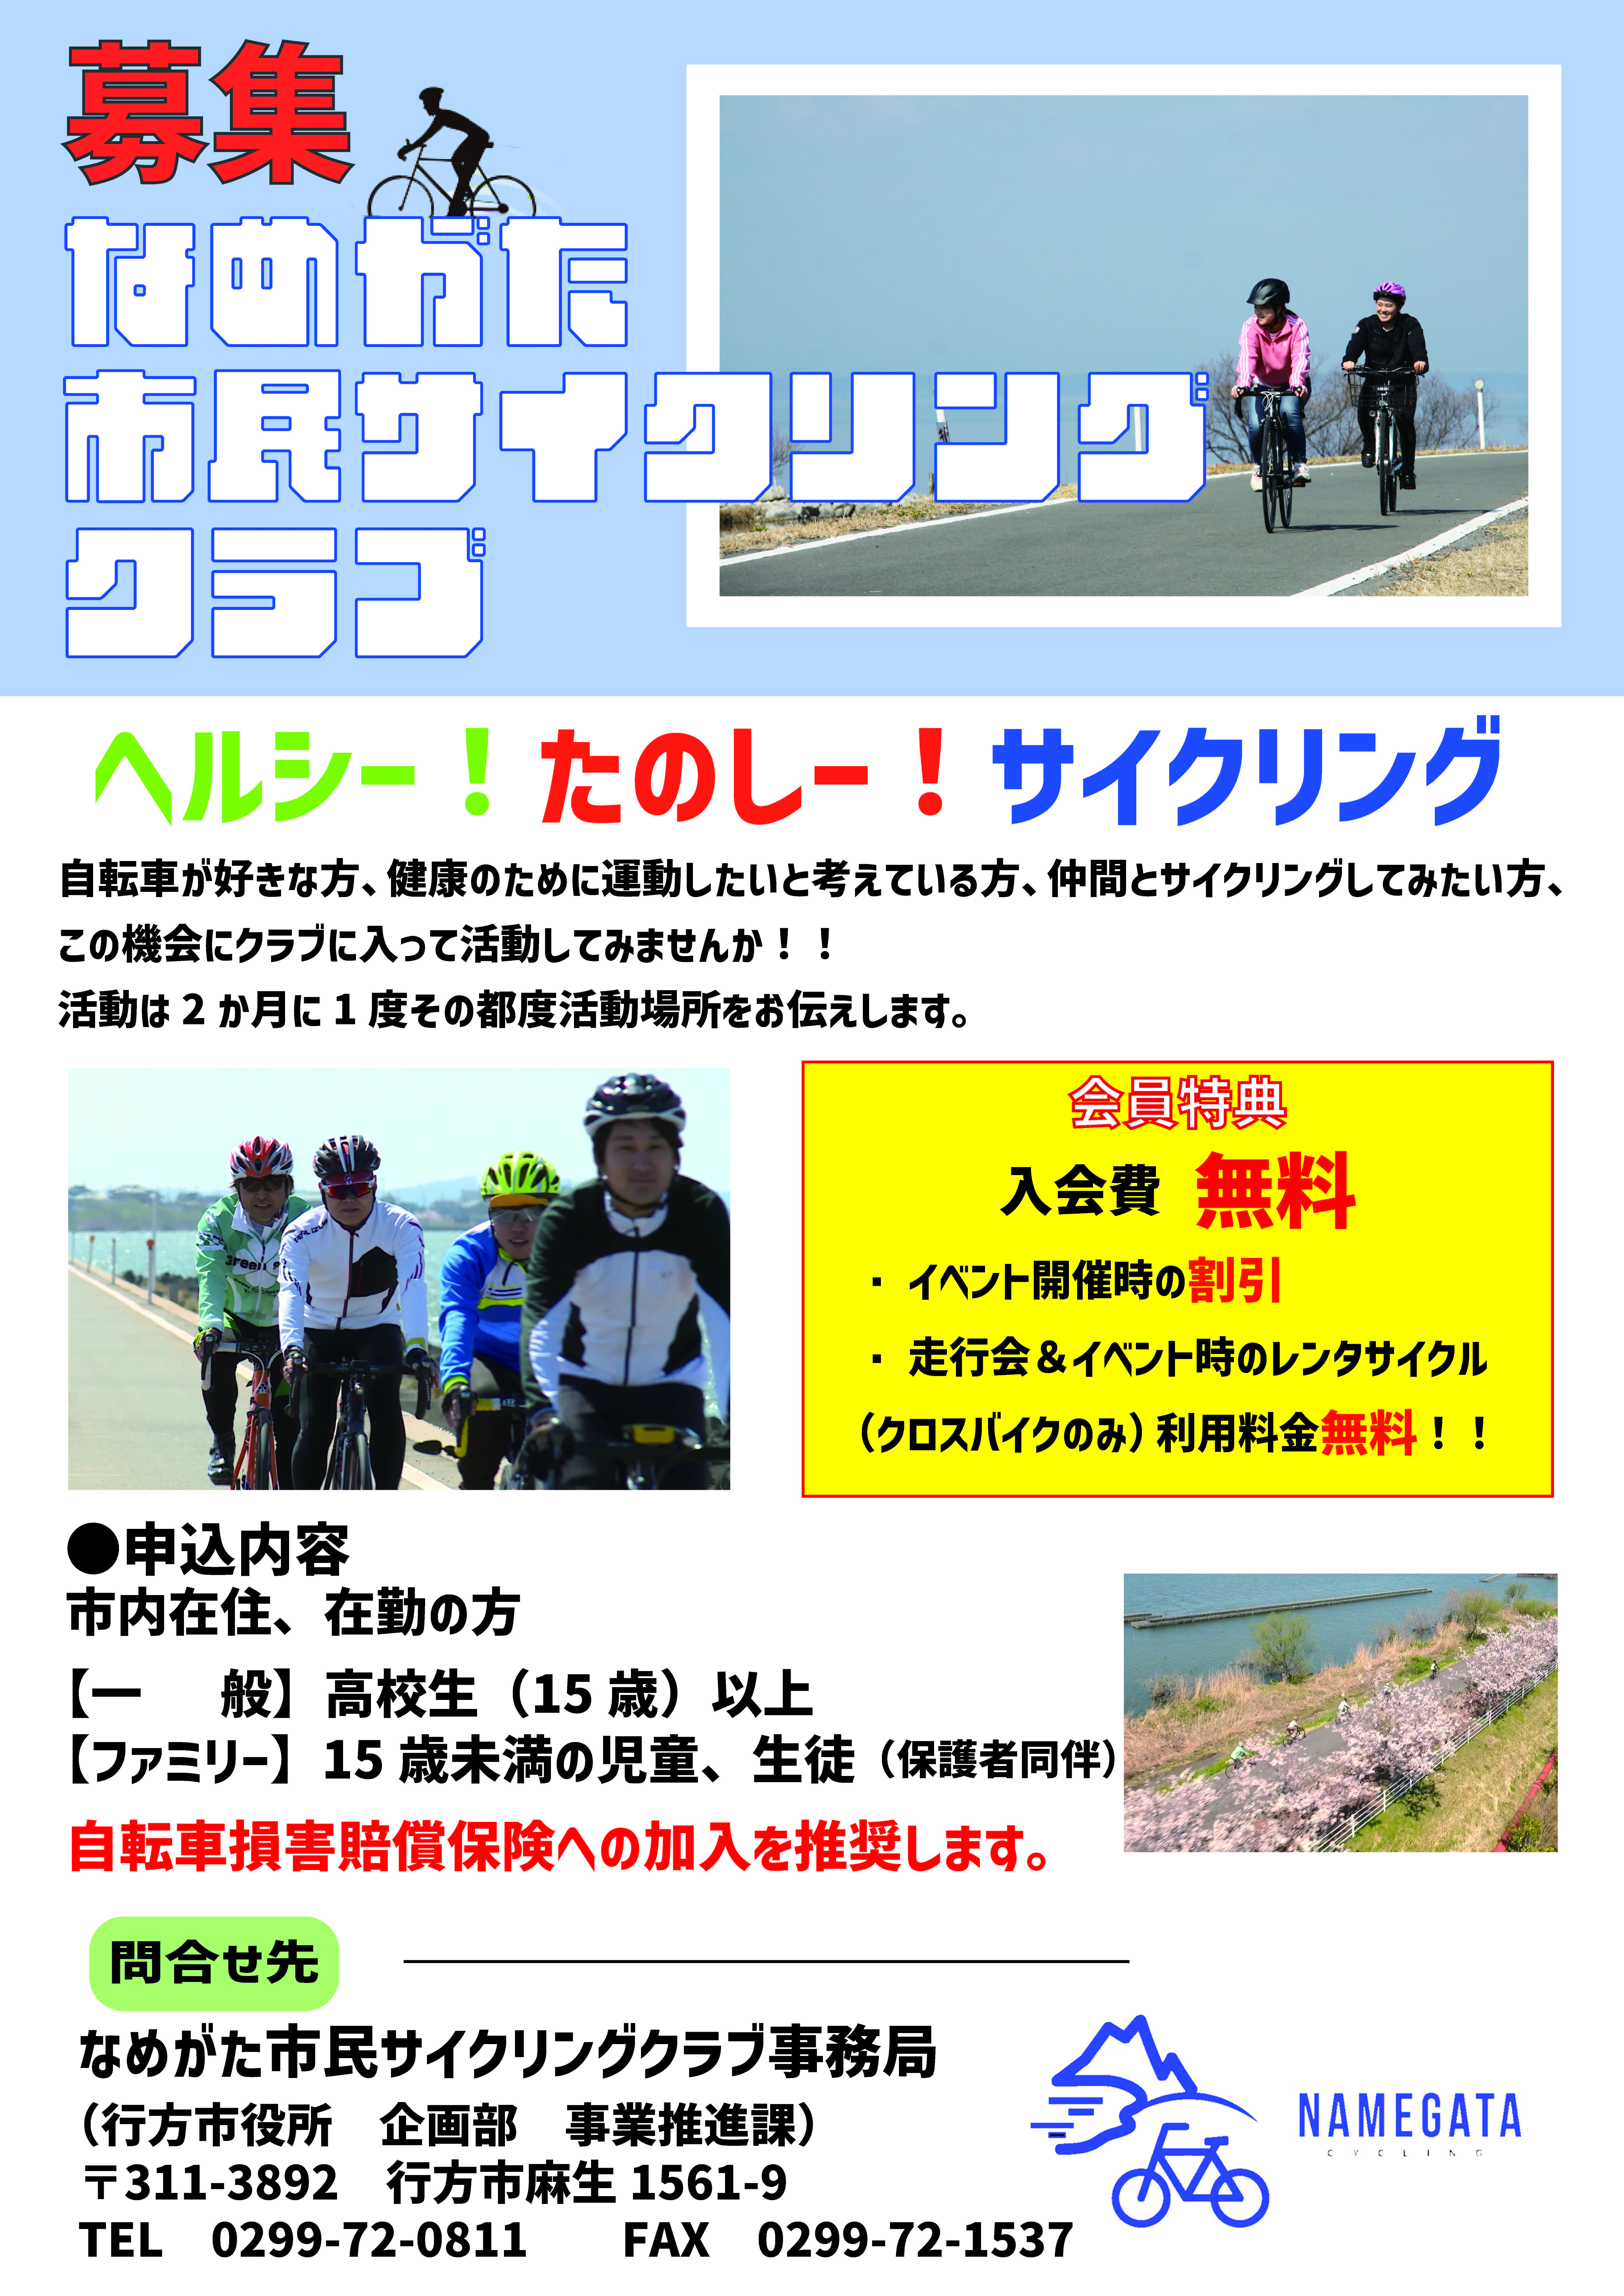 市民サイクリングクラブ